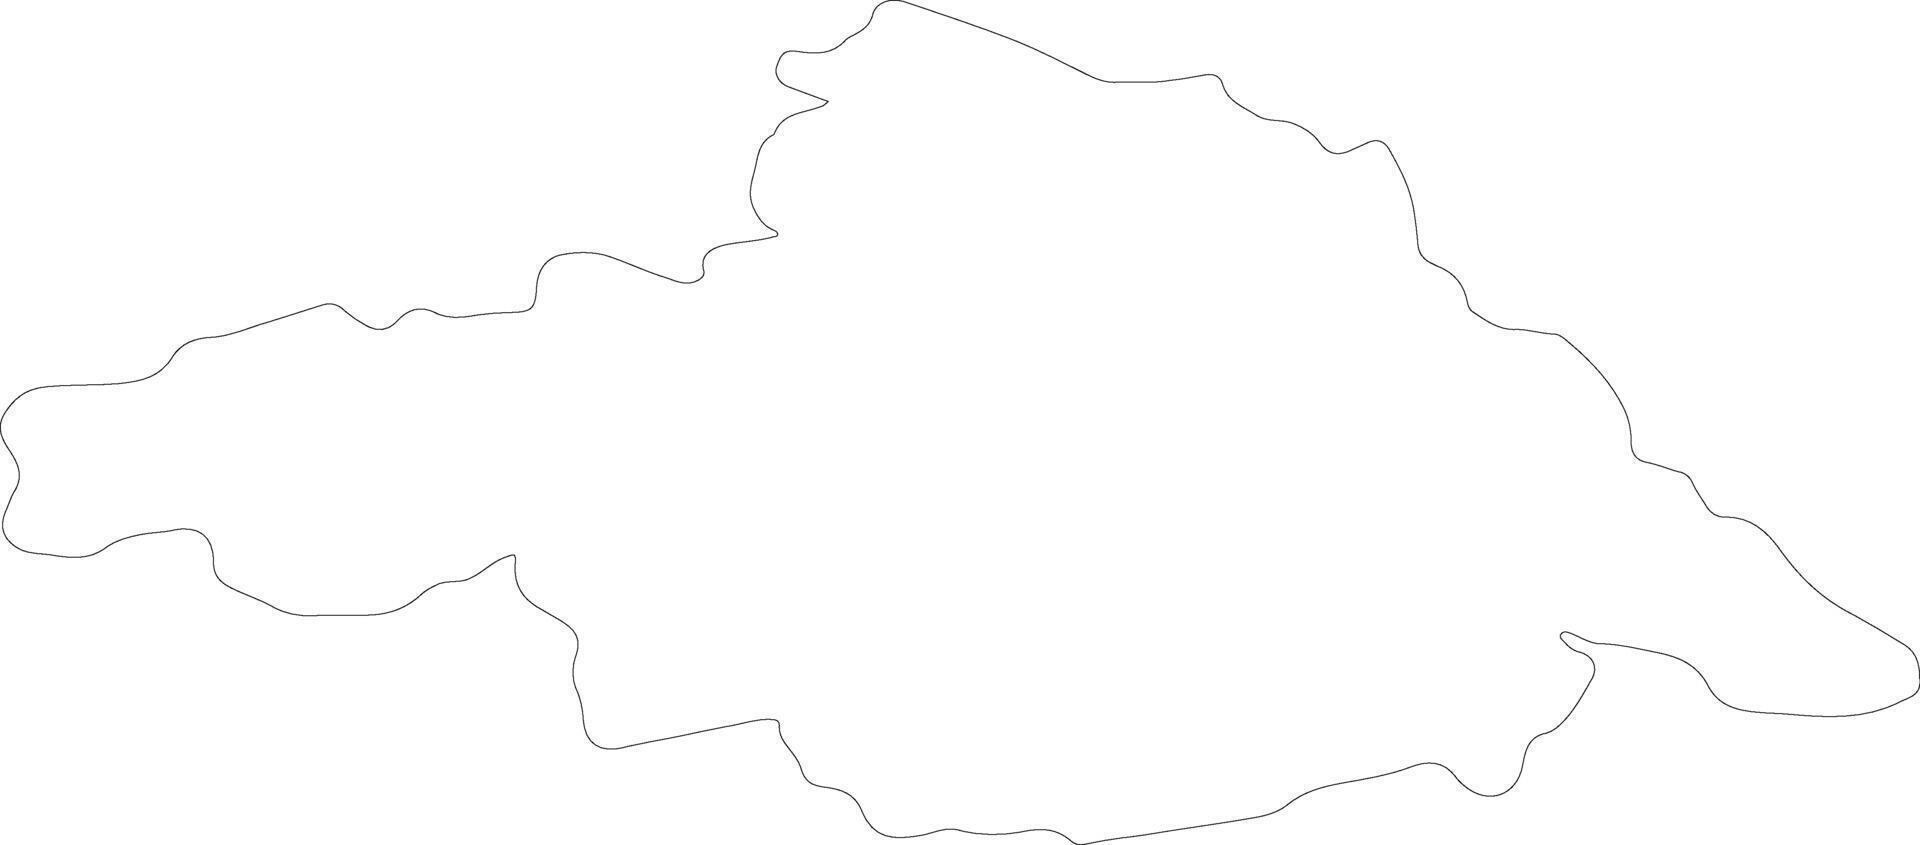 arhangai Mongolie contour carte vecteur